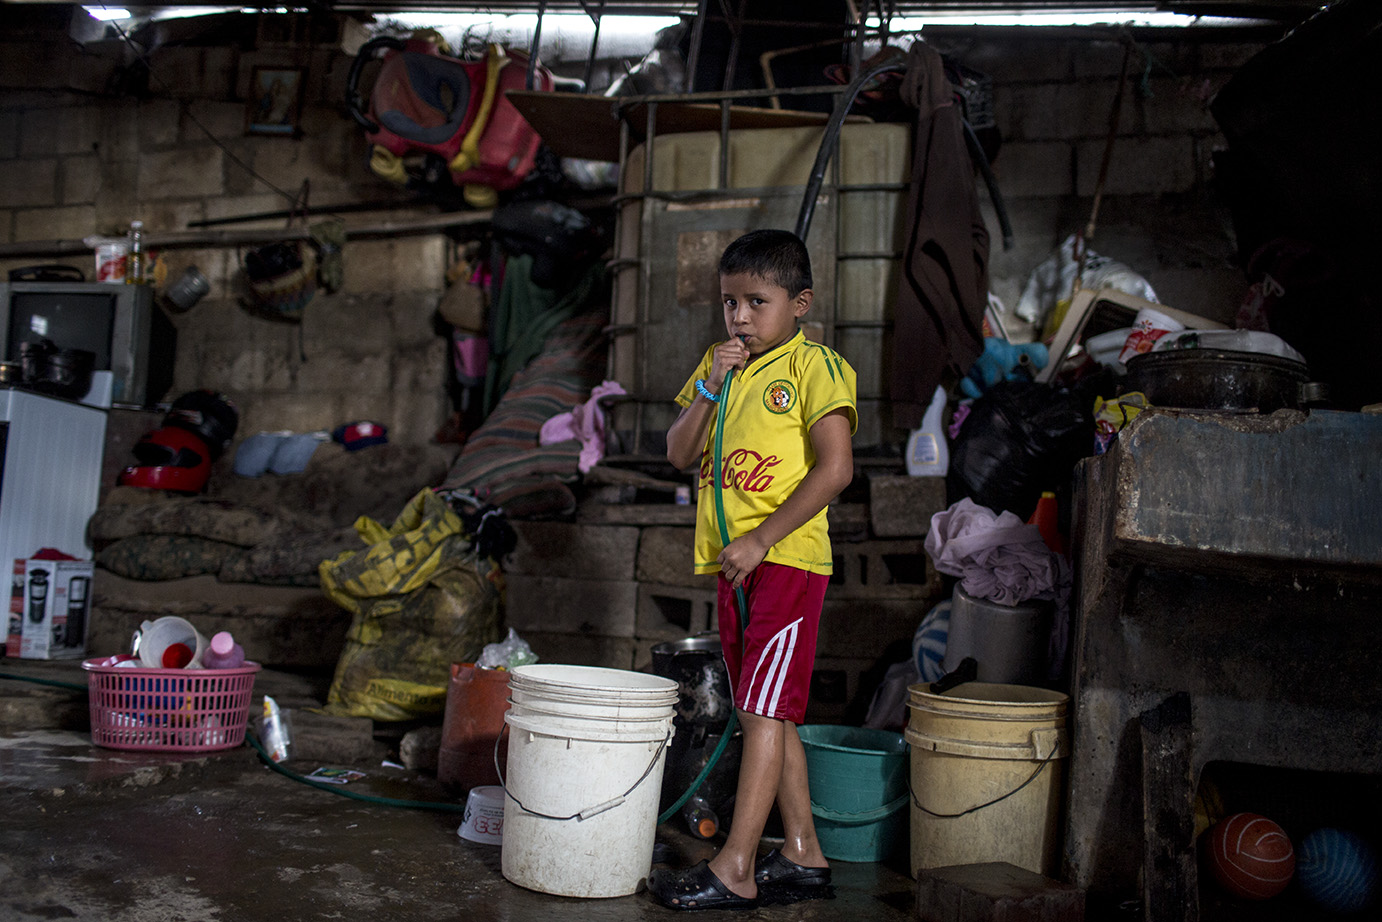 Mario Quijú, 8, aspira aire por una manguera para empezar a llenar las cubetas de su casa, ubicada en el lote 18 sector A de la colonia Candelaria, en la tarde del lunes 04 de noviembre 2019. Simone Dalmasso